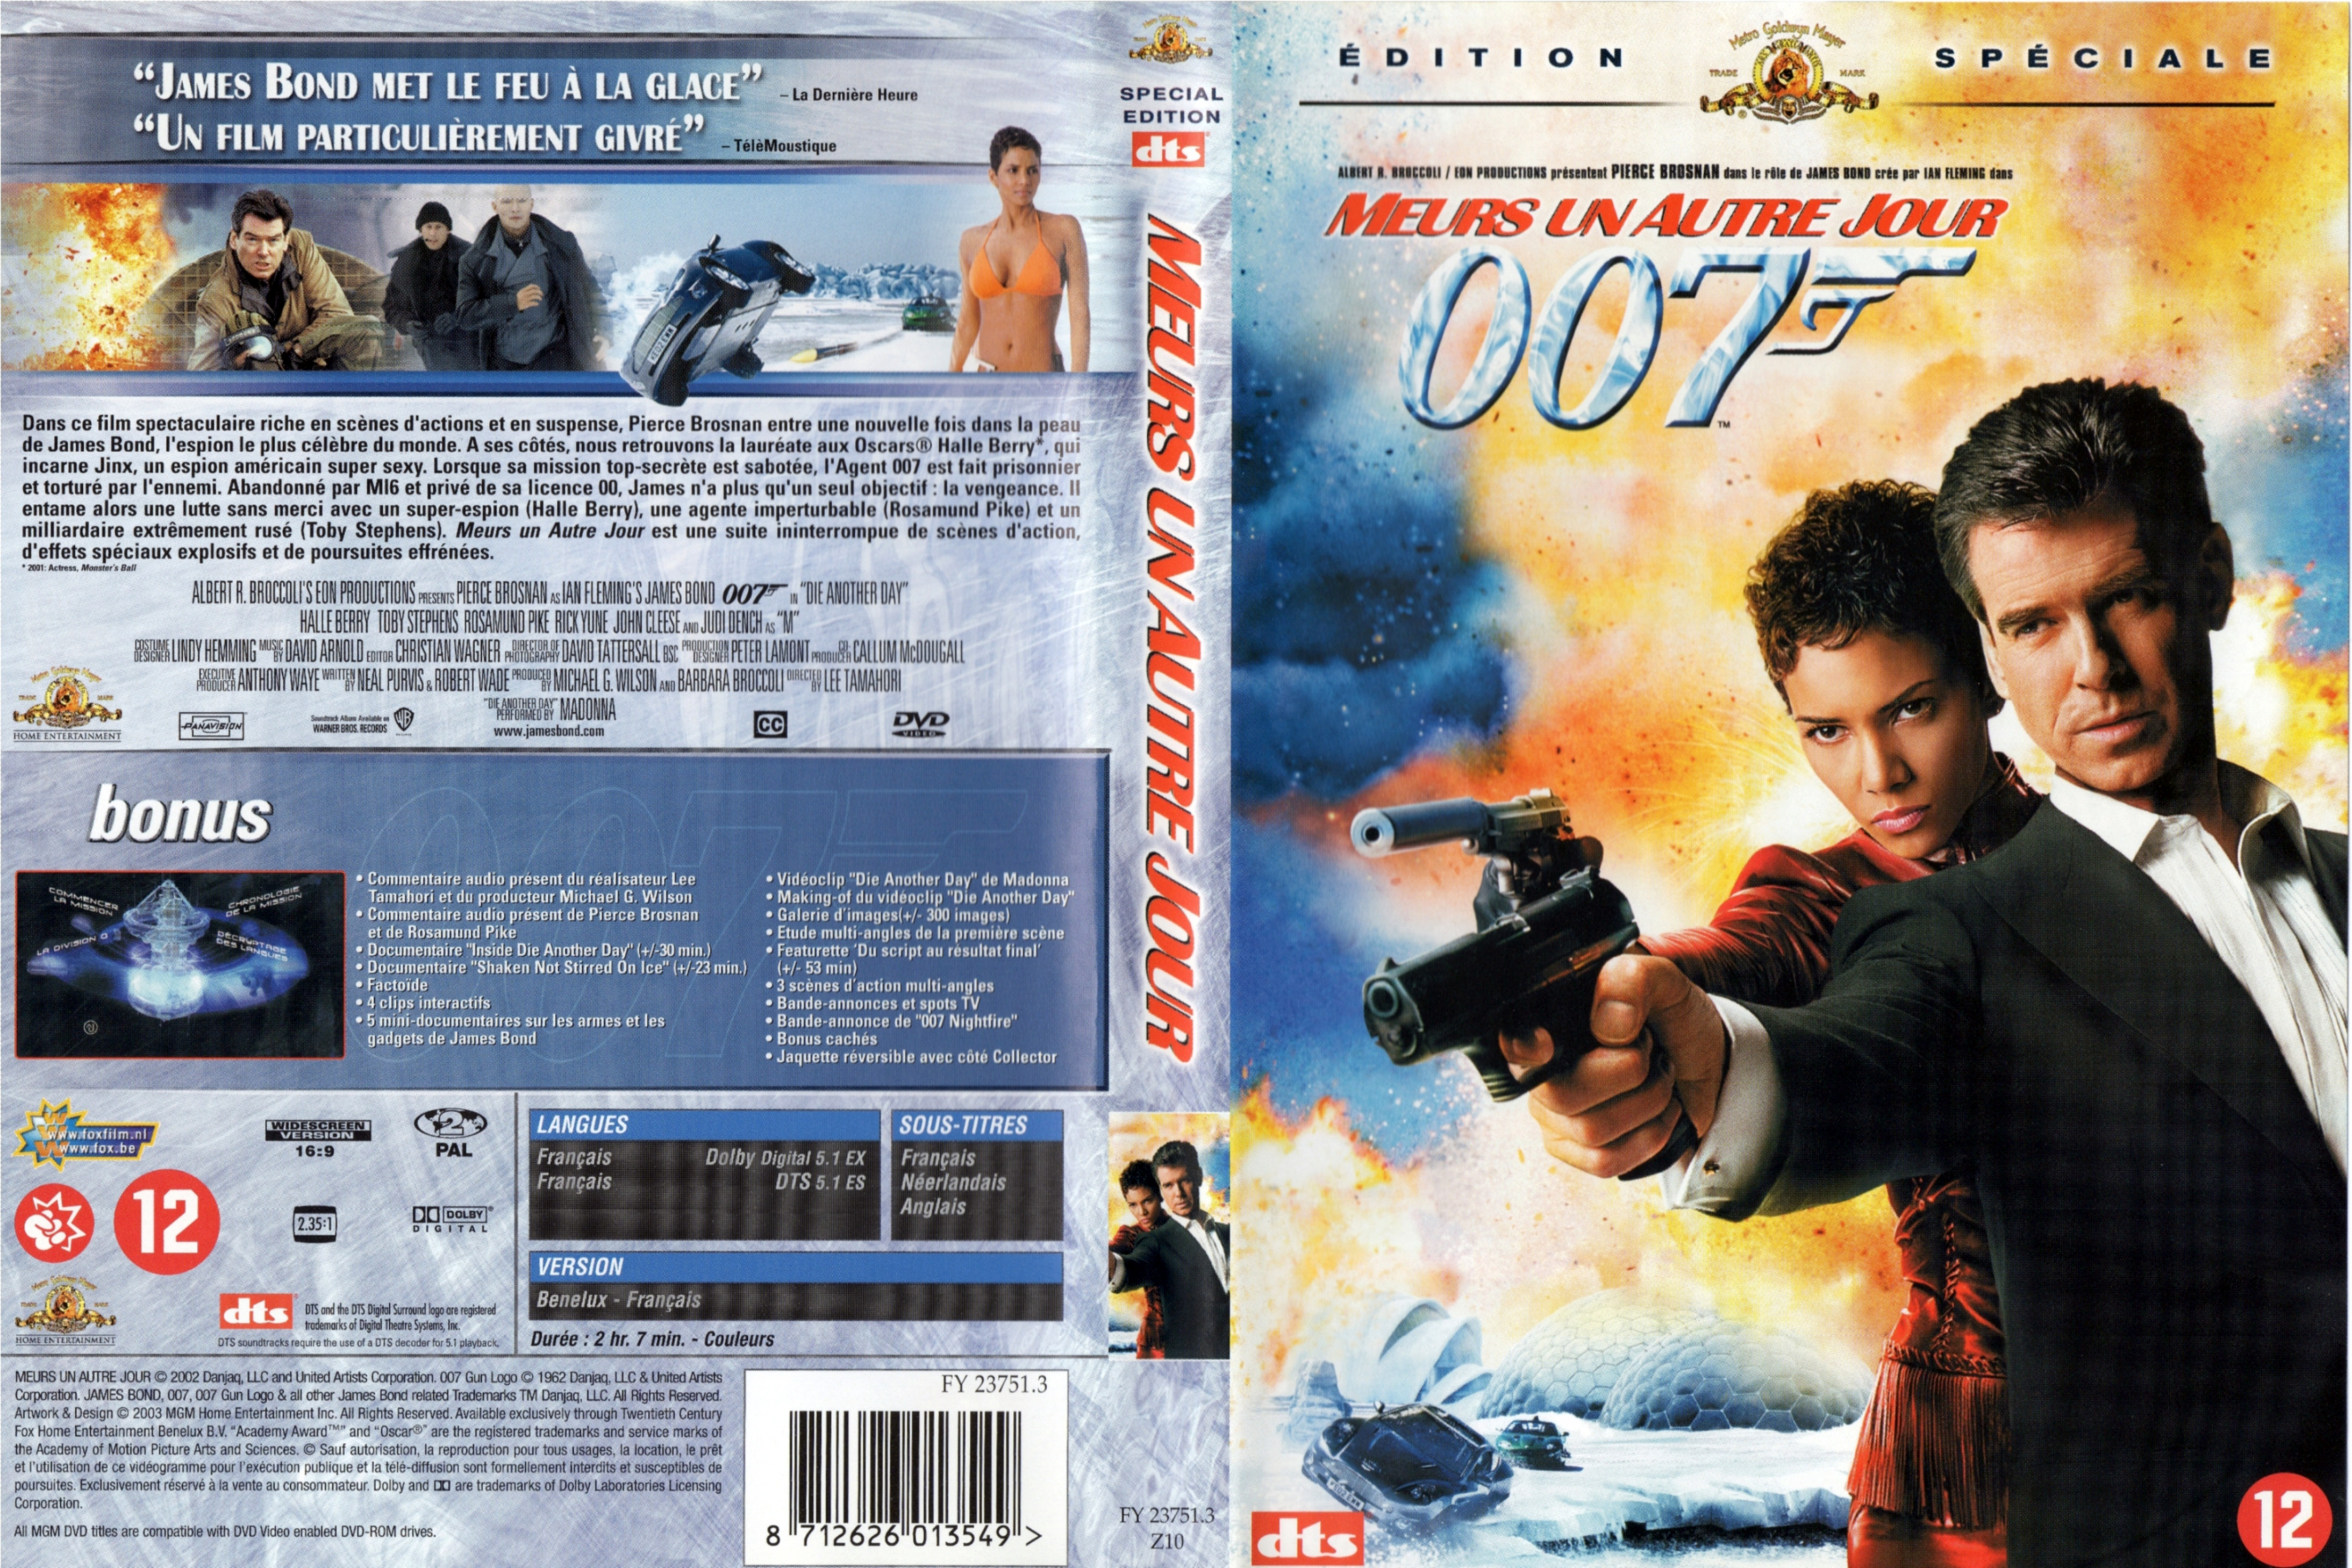 Jaquette DVD James Bond 007 Meurs un autre jour v3